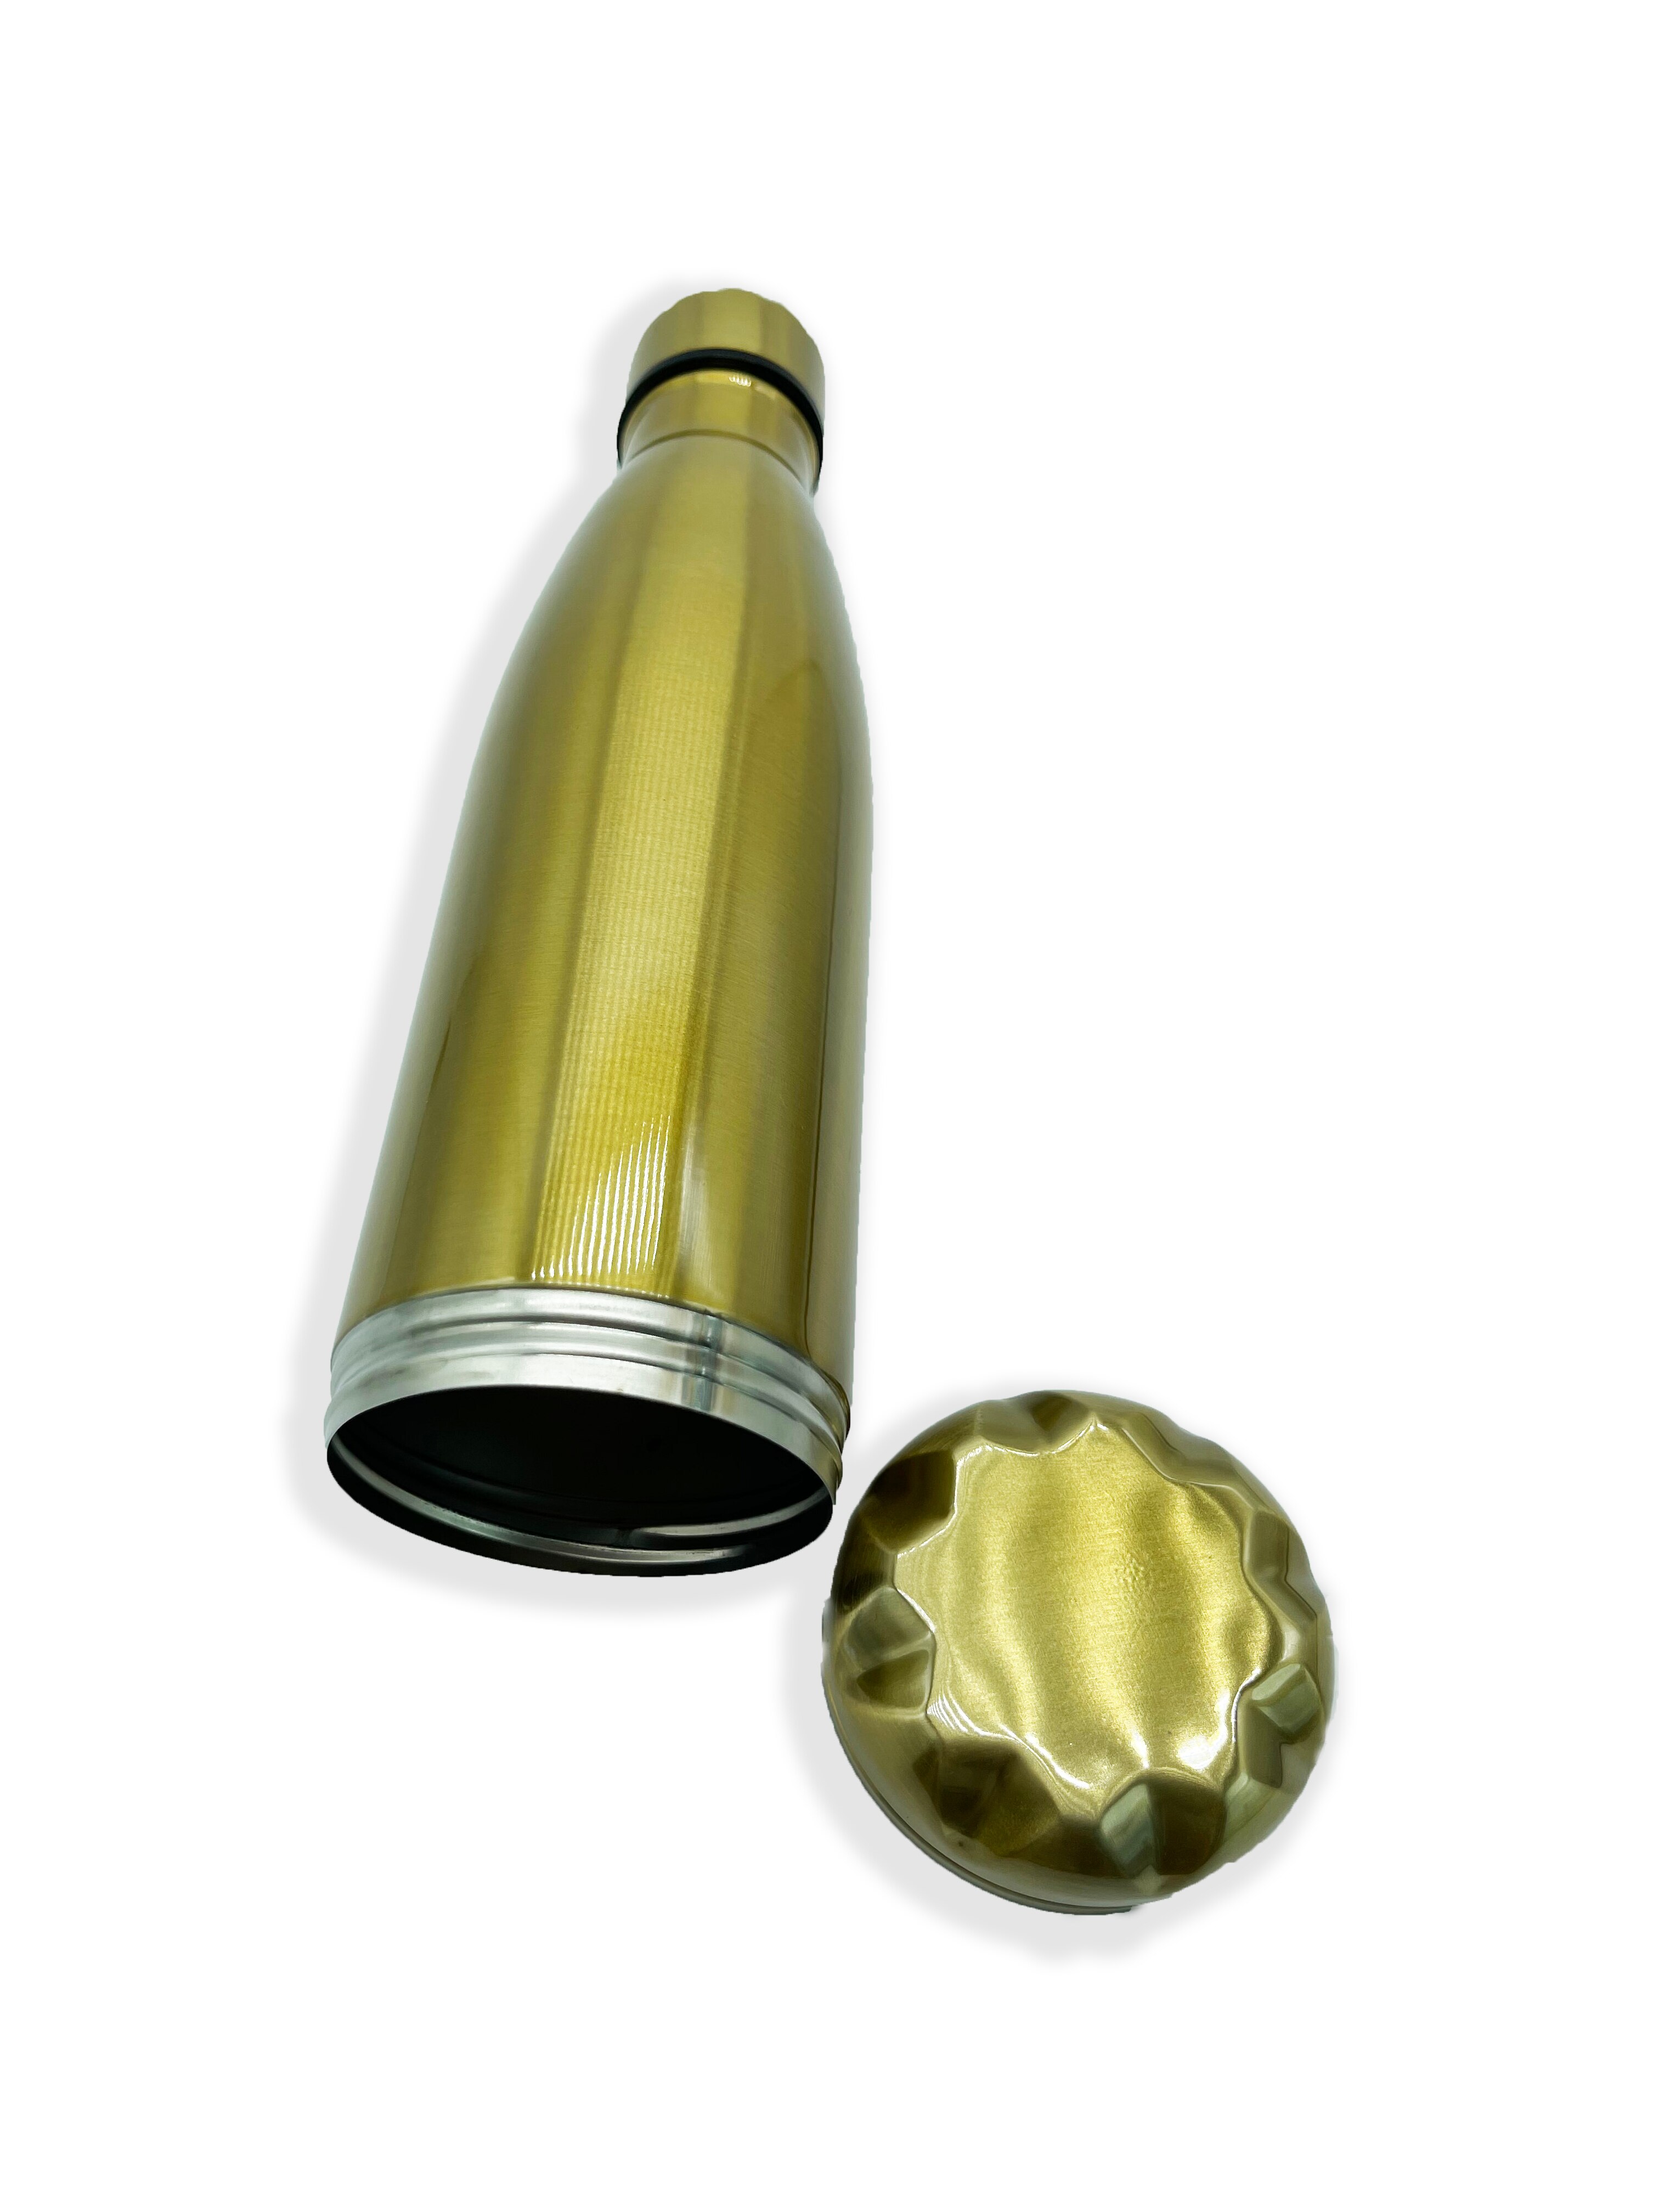 Afledningsvandflaske kan rustfrit stål tumbler sikker med en fødevaregodkendt lugtsikker pose bund skrues af for at opbevare: Guld